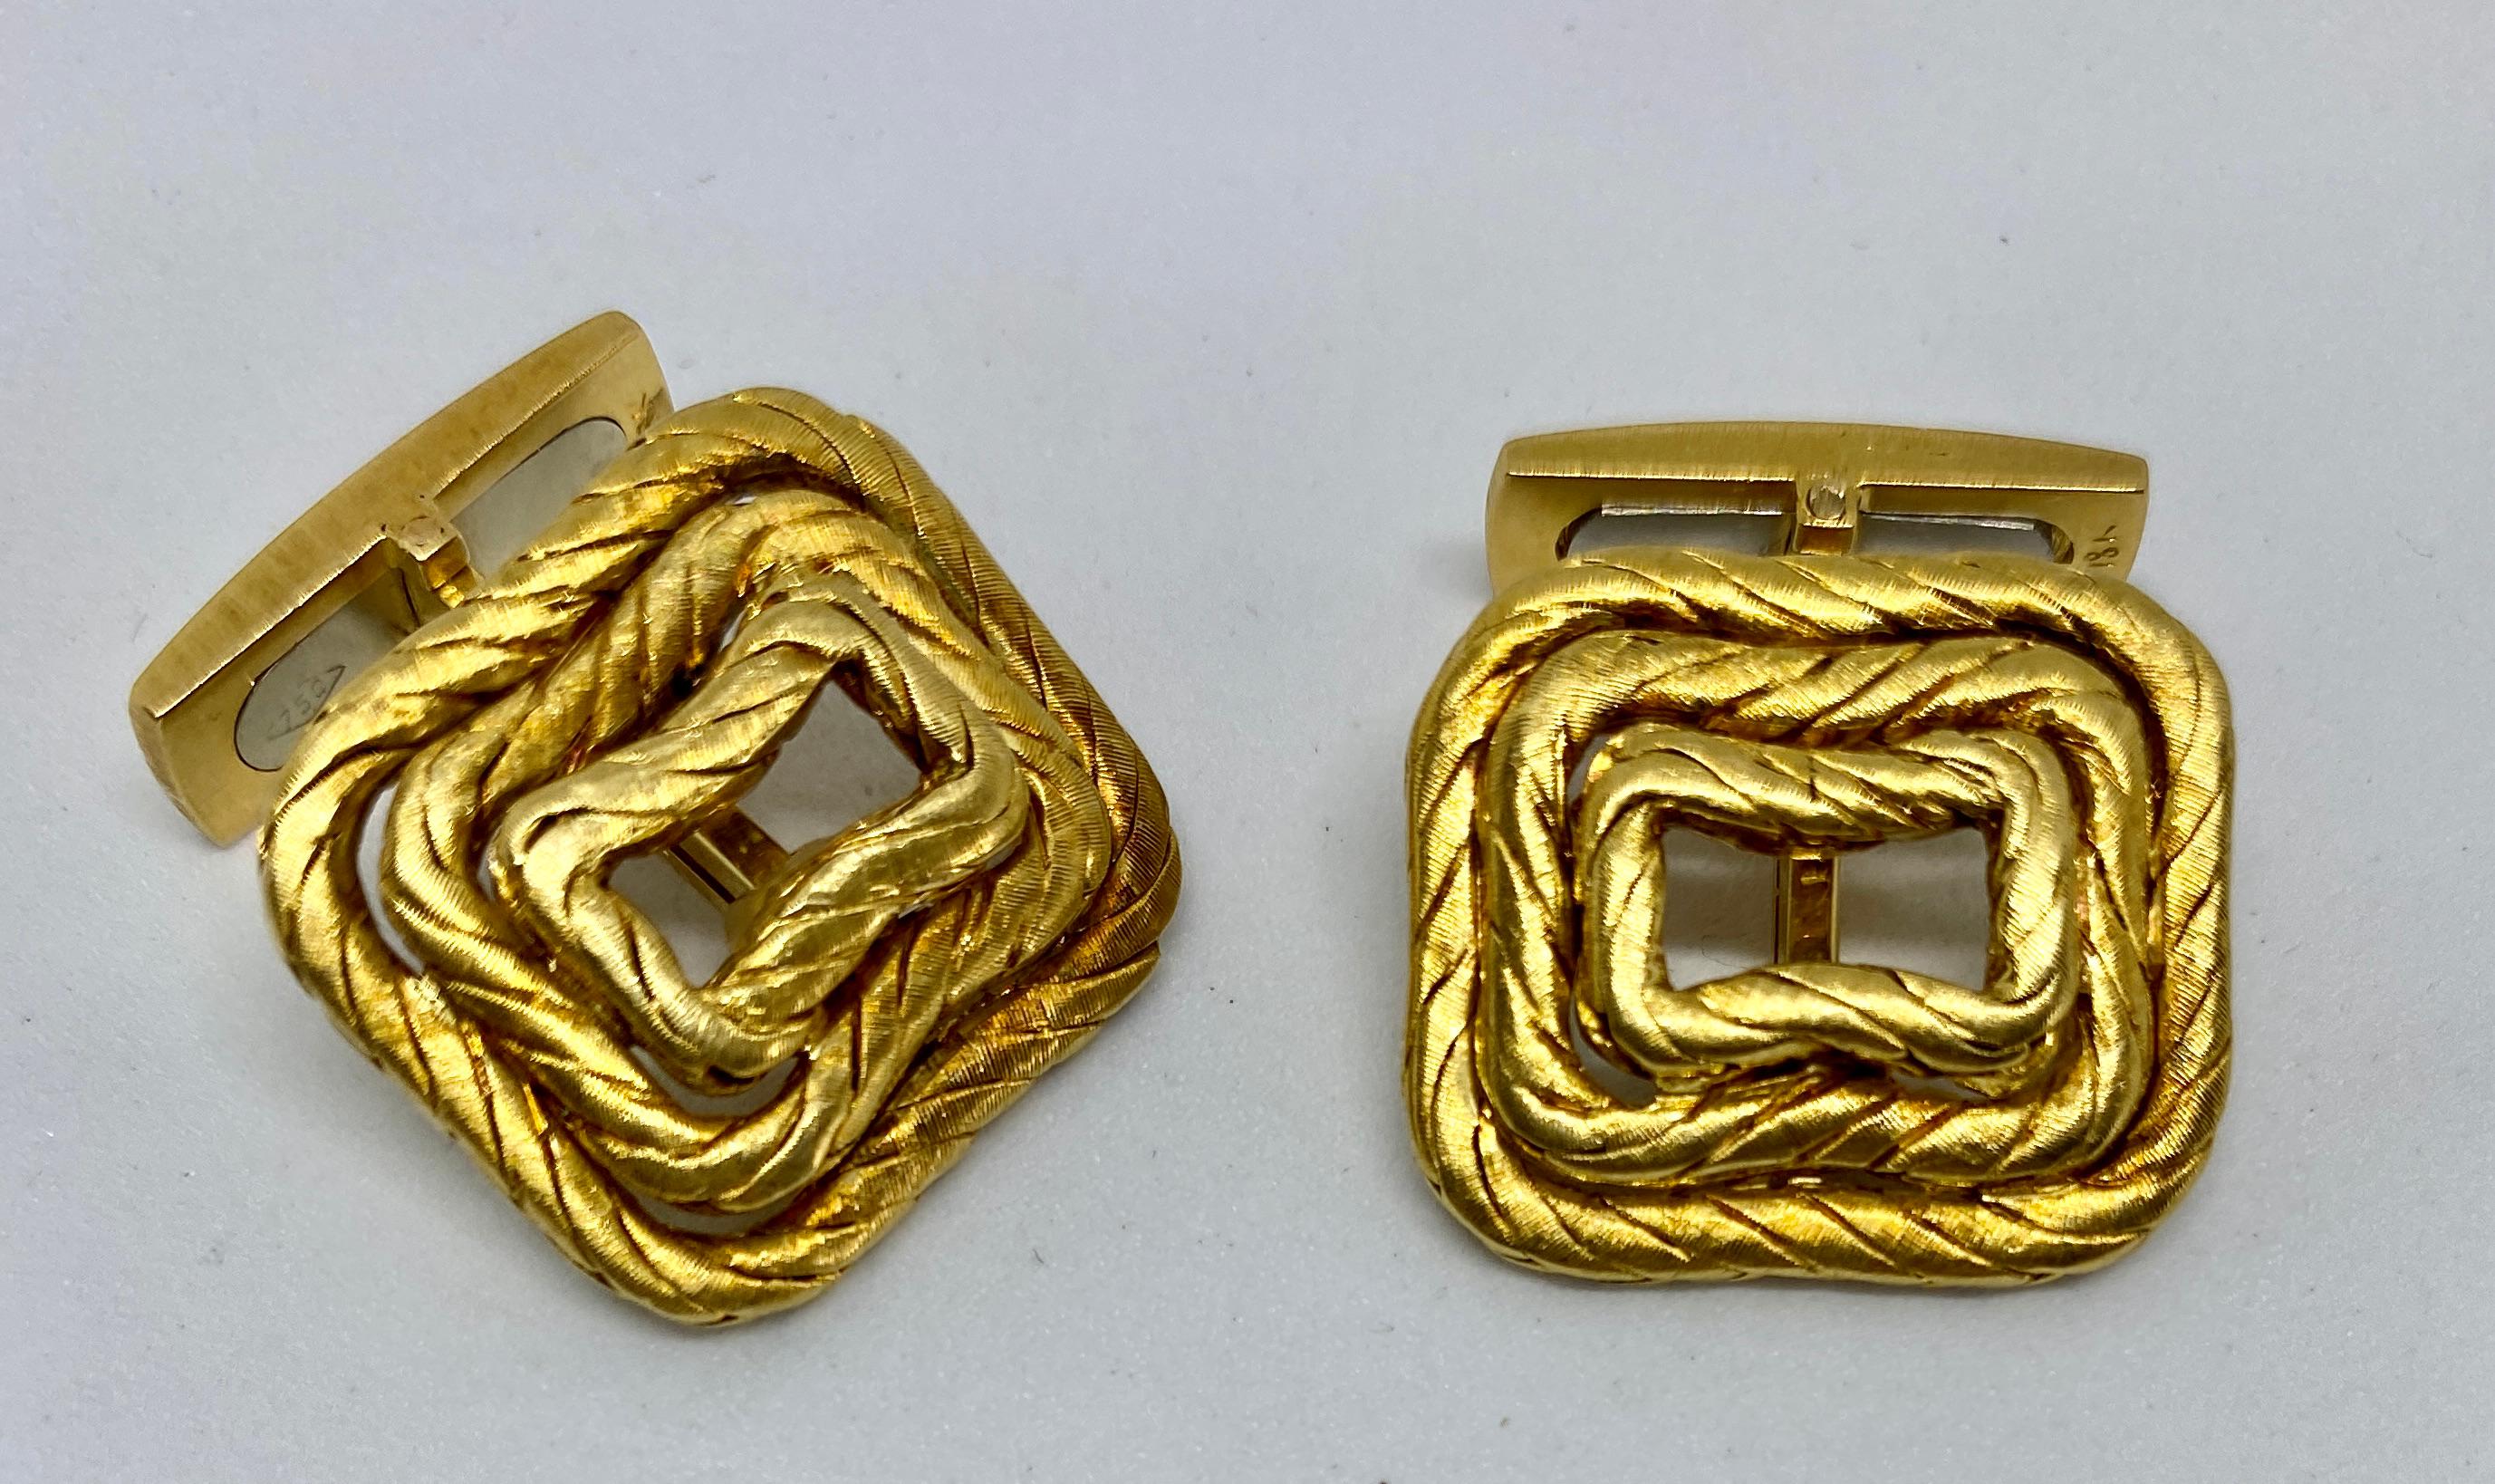 Une paire de boutons de manchette vintage en or jaune 18 carats qui réussit à équilibrer un design subtil avec le style inimitable et le savoir-faire inégalé de Buccellati.

Utilisant deux techniques pour lesquelles Buccellati est connu - le tissage